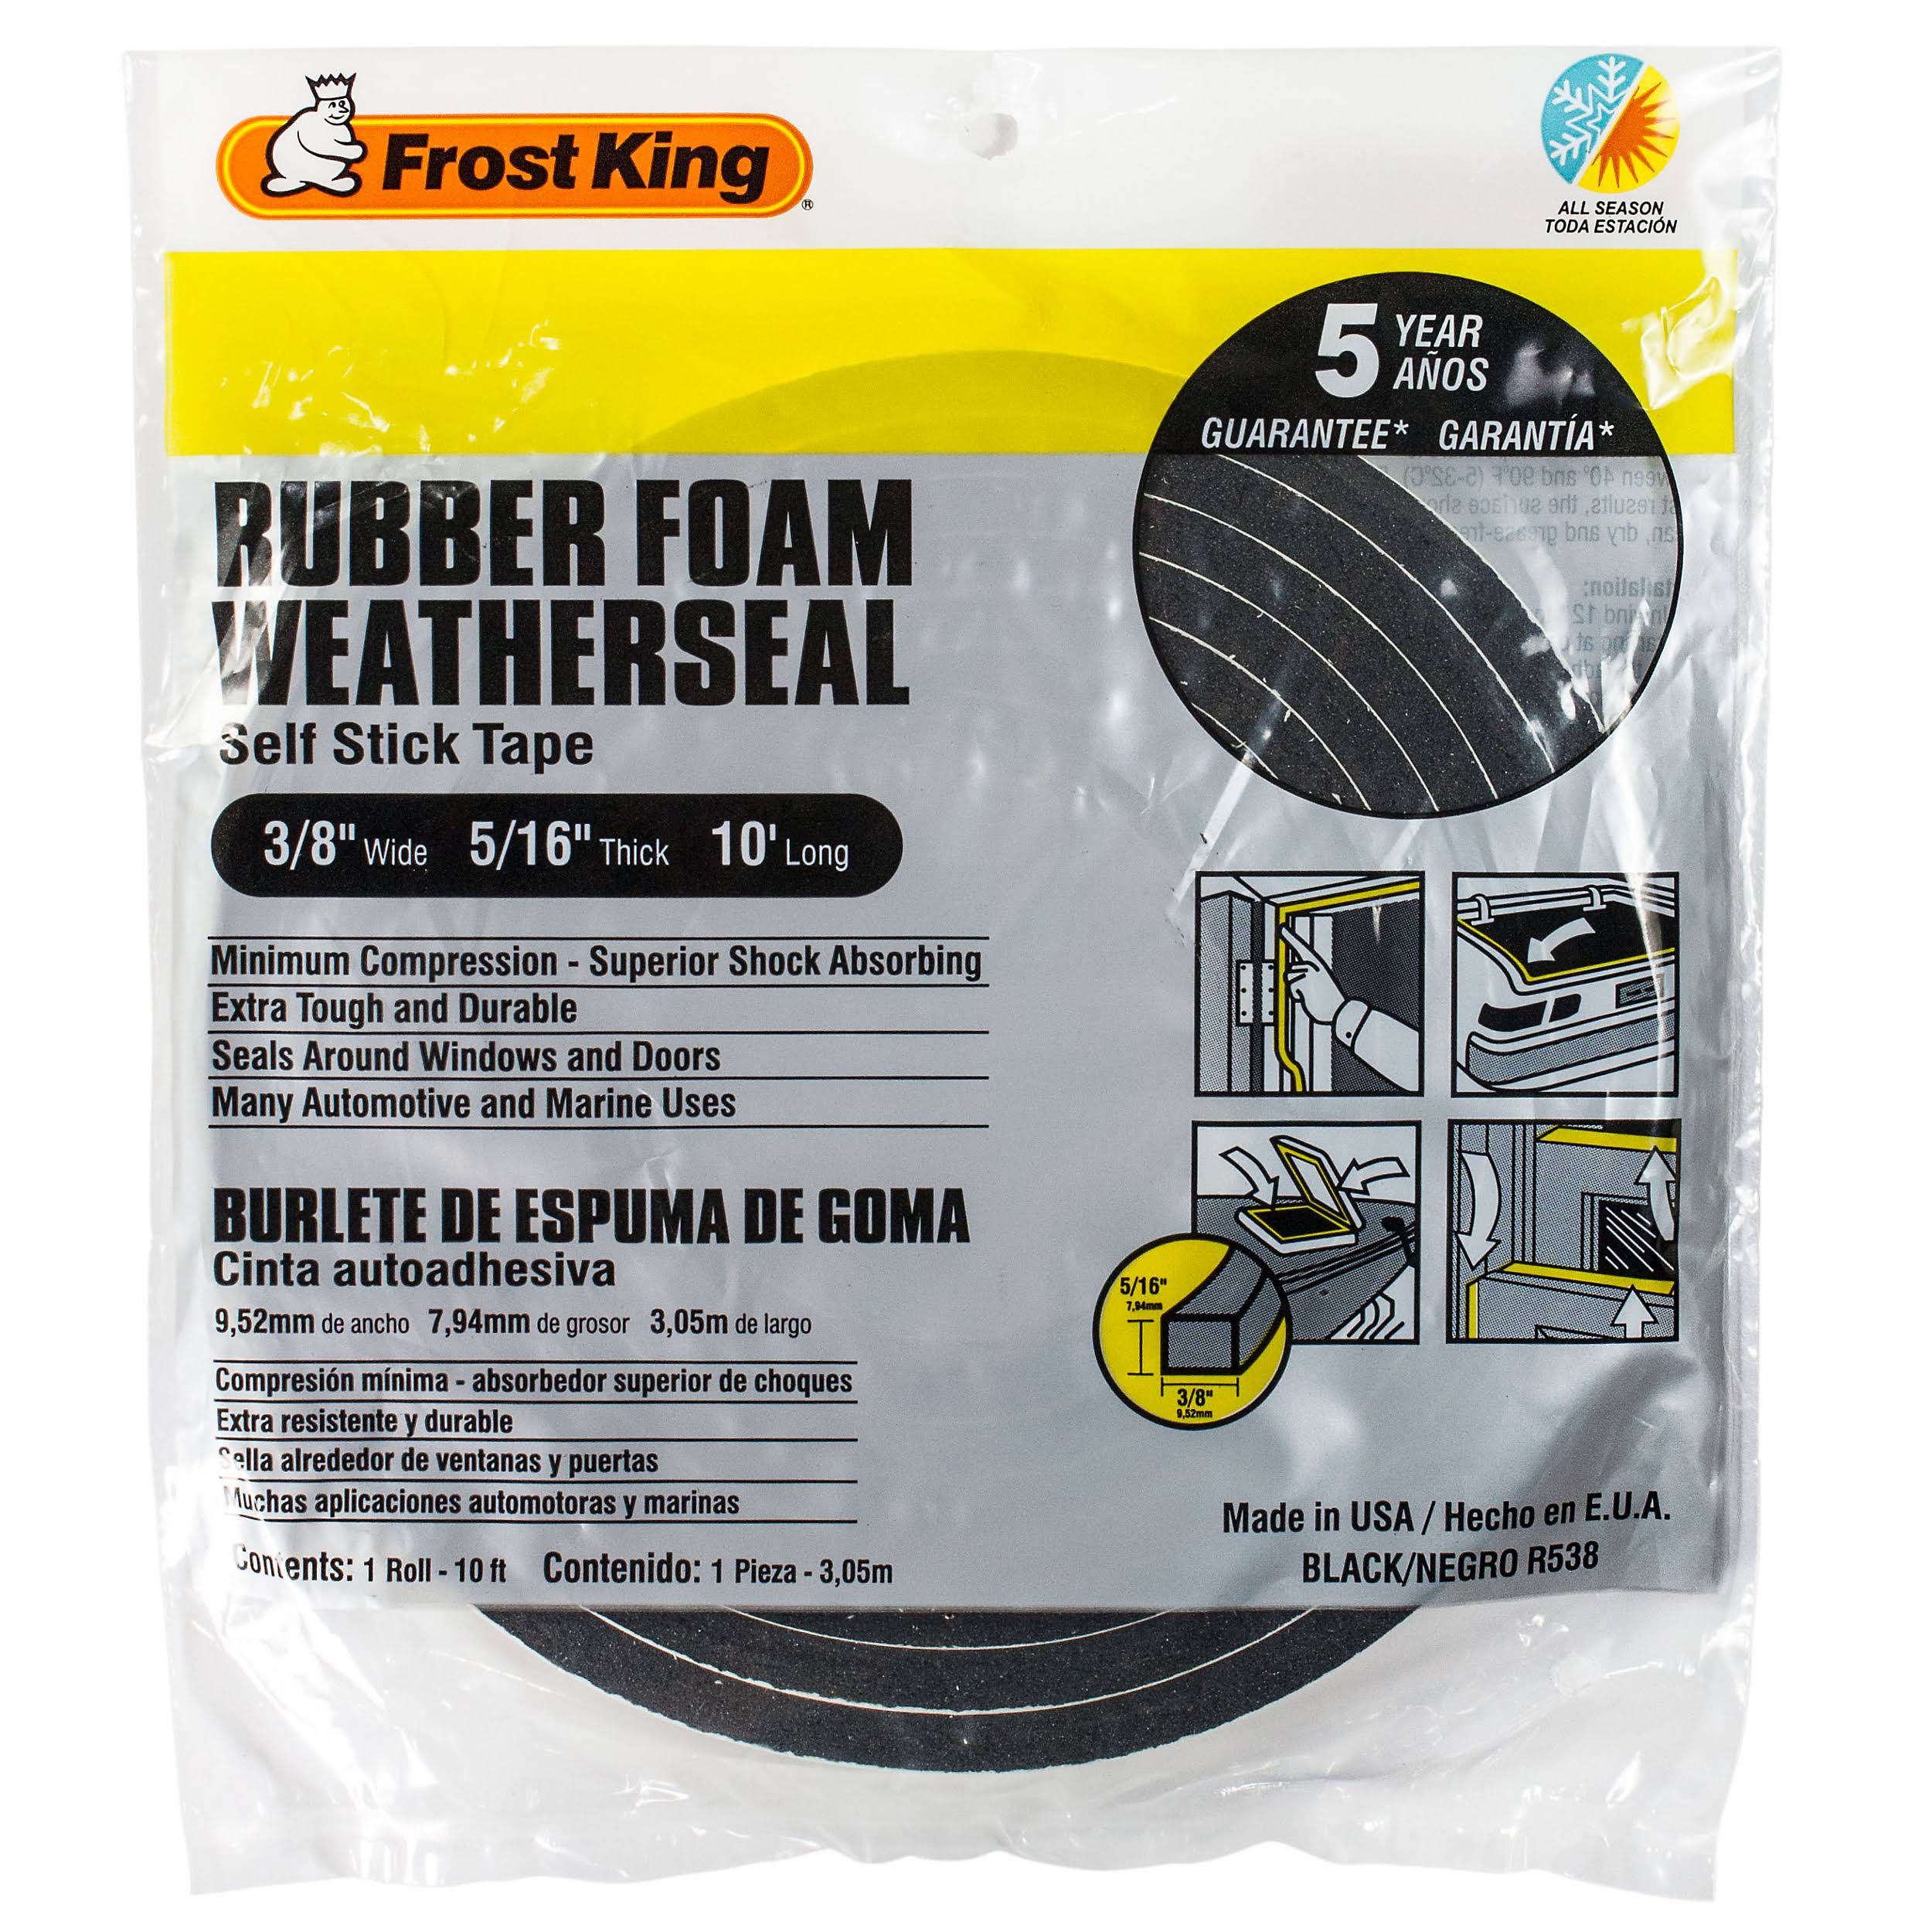 Frost King Rubber Foam Weatherseal - 1 Refill